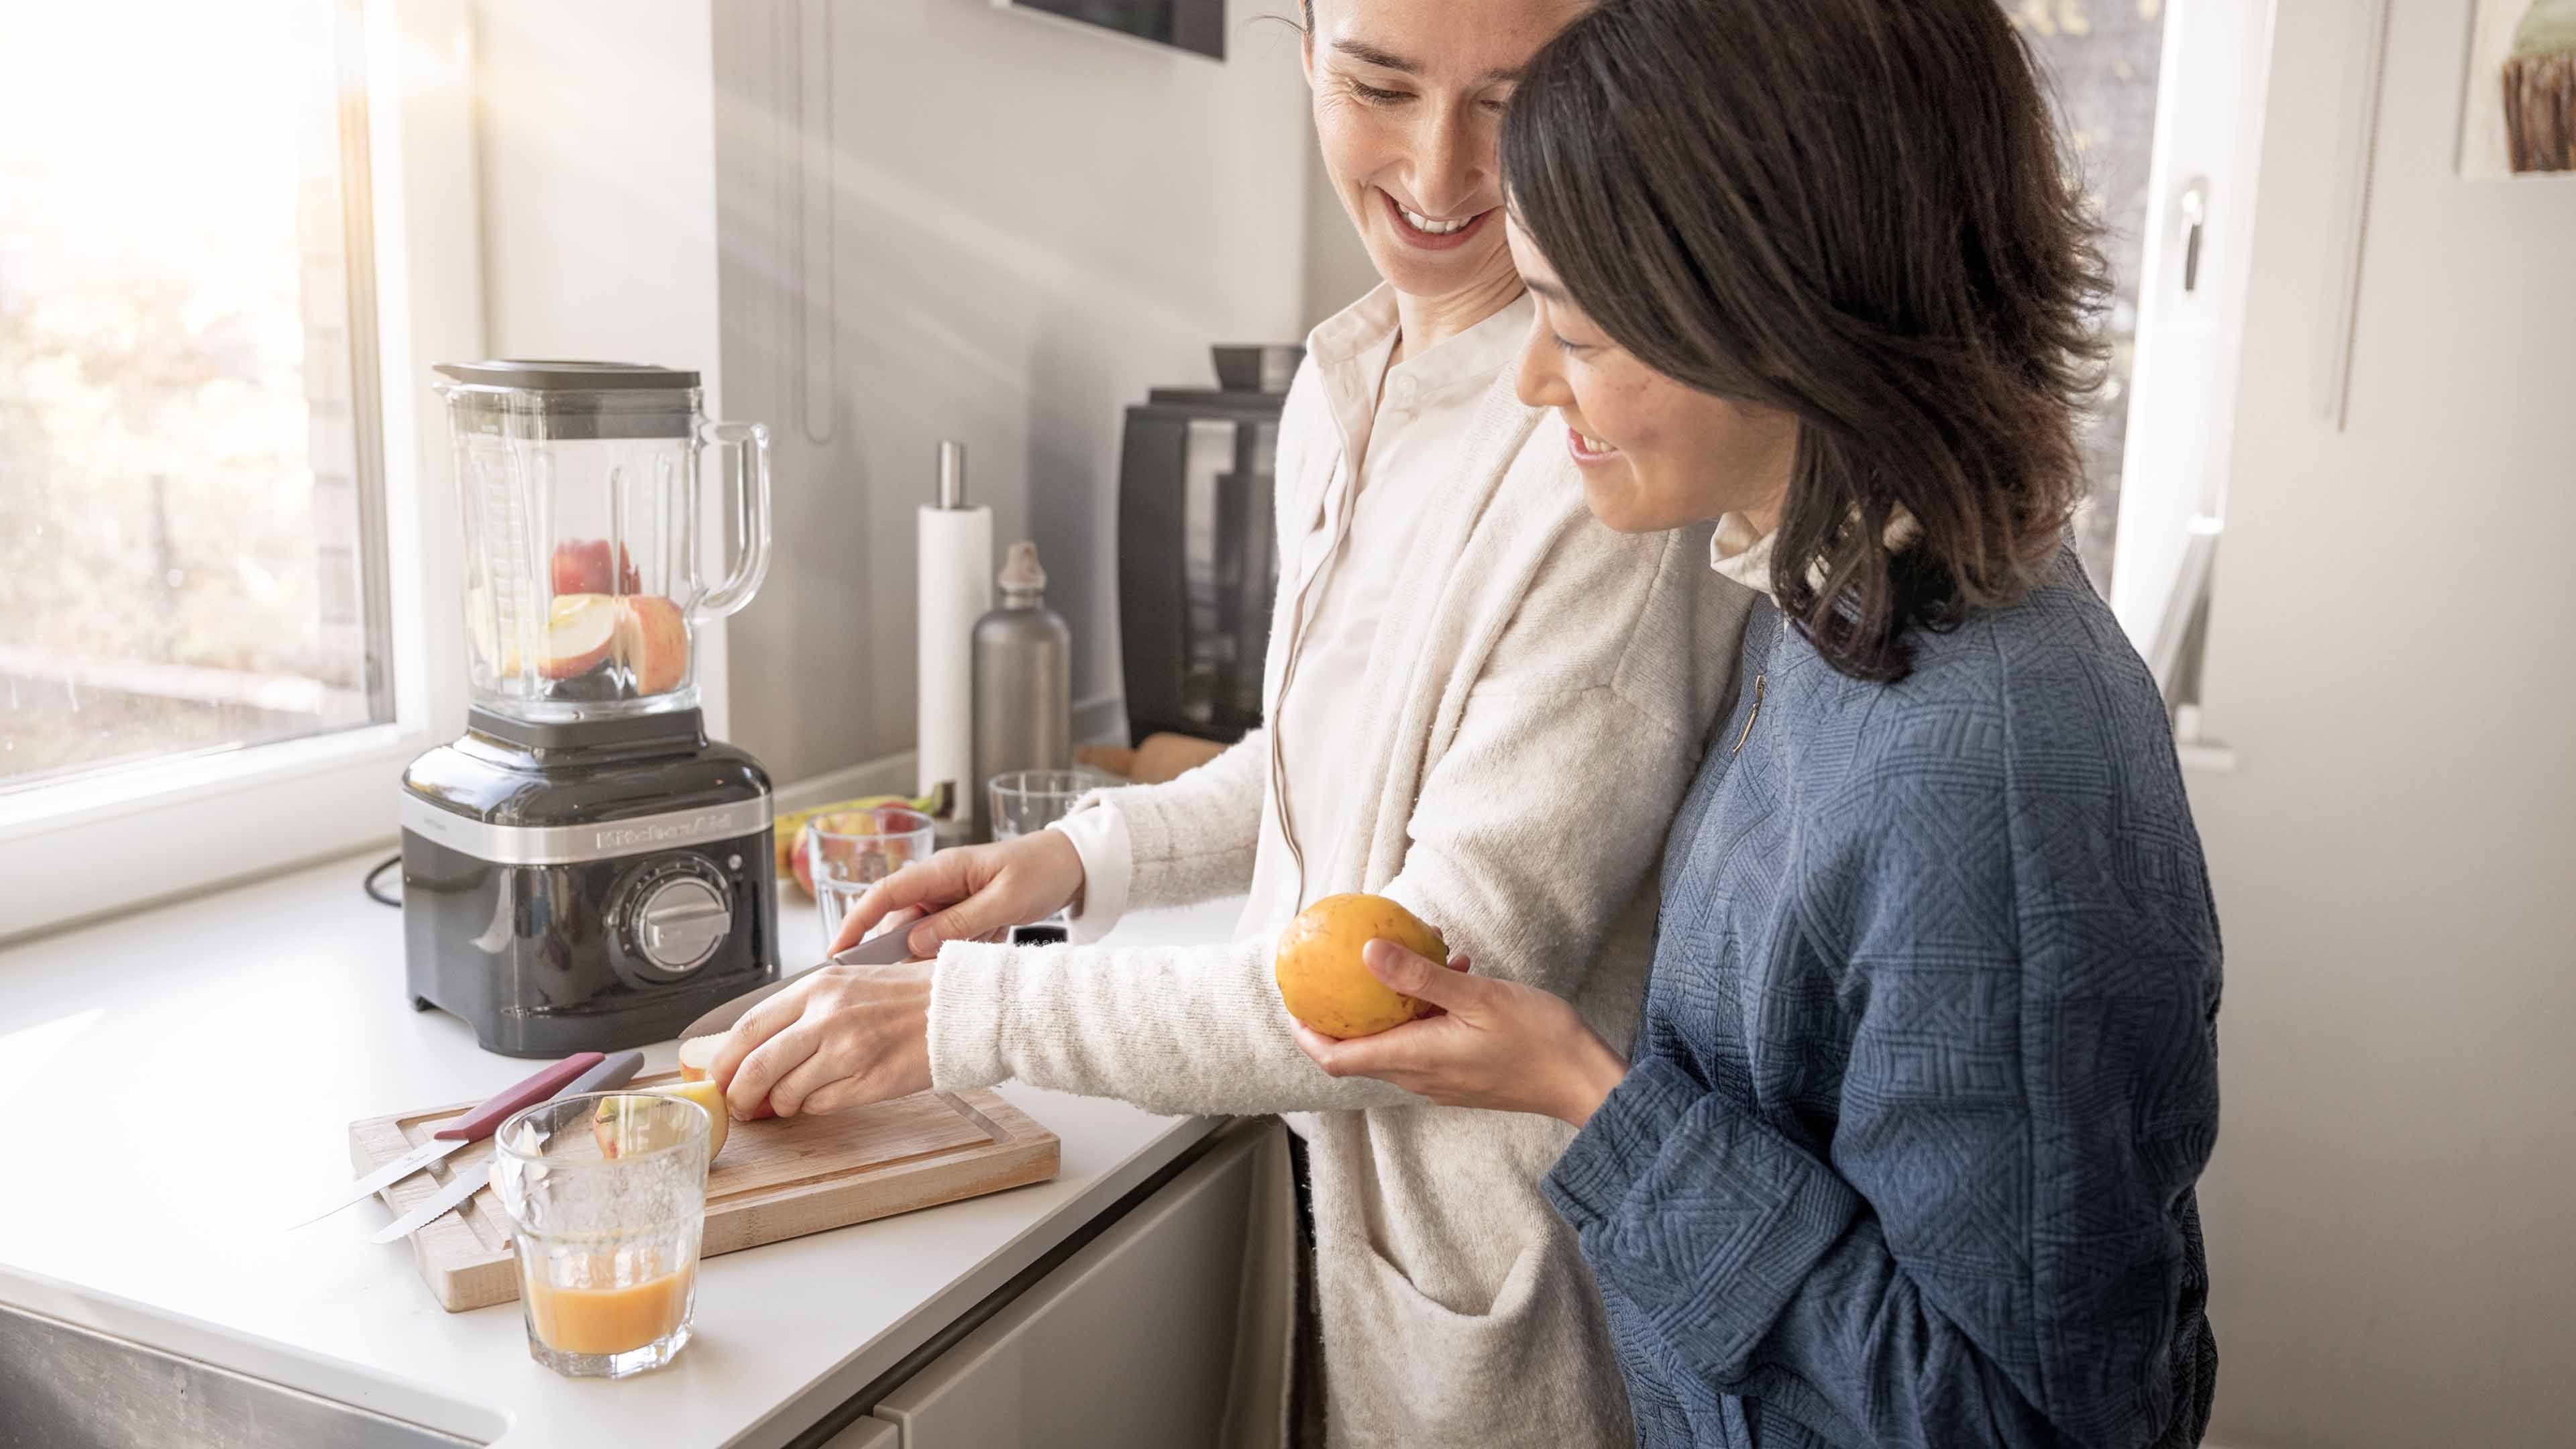 Two women making fresh orange juice